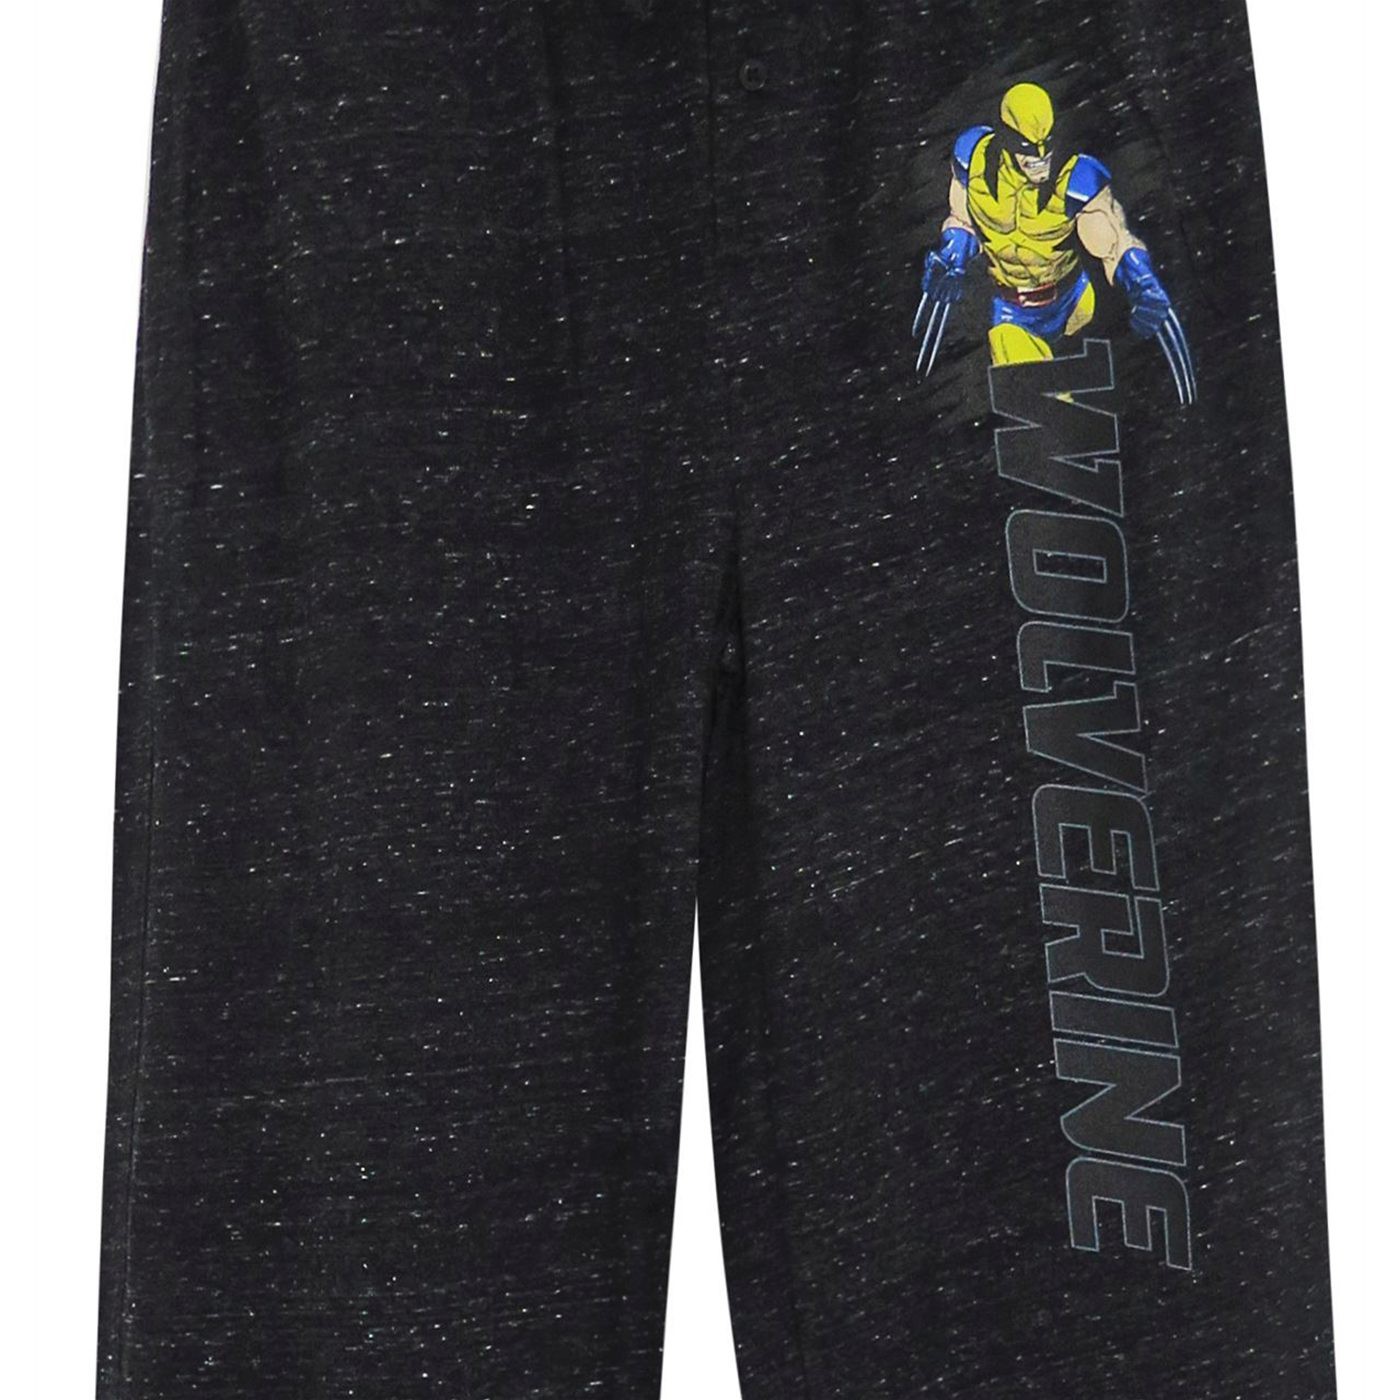 Wolverine Black Snow Heather Pajama Pants